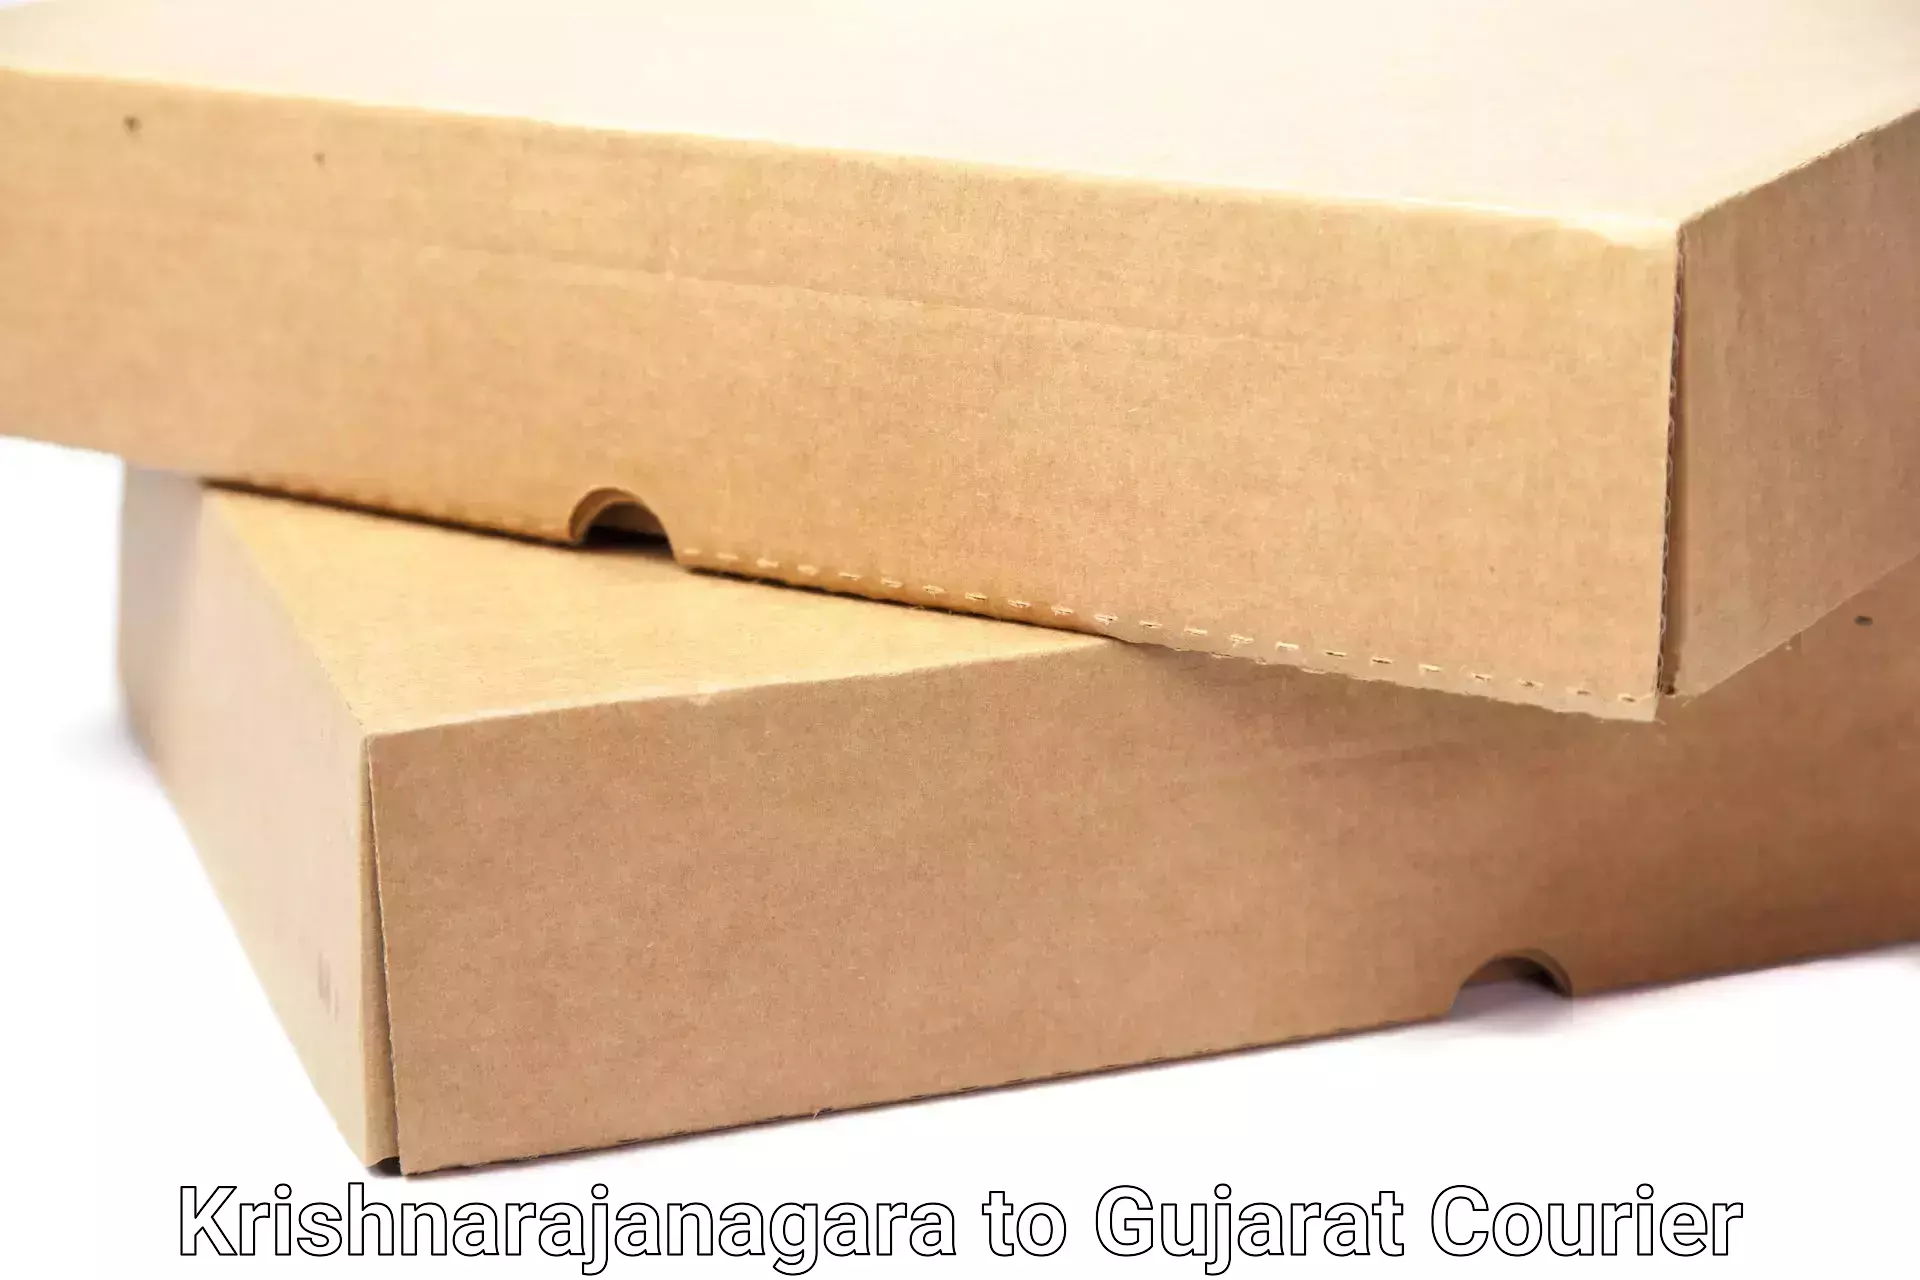 Tailored moving packages Krishnarajanagara to Patan Gujarat